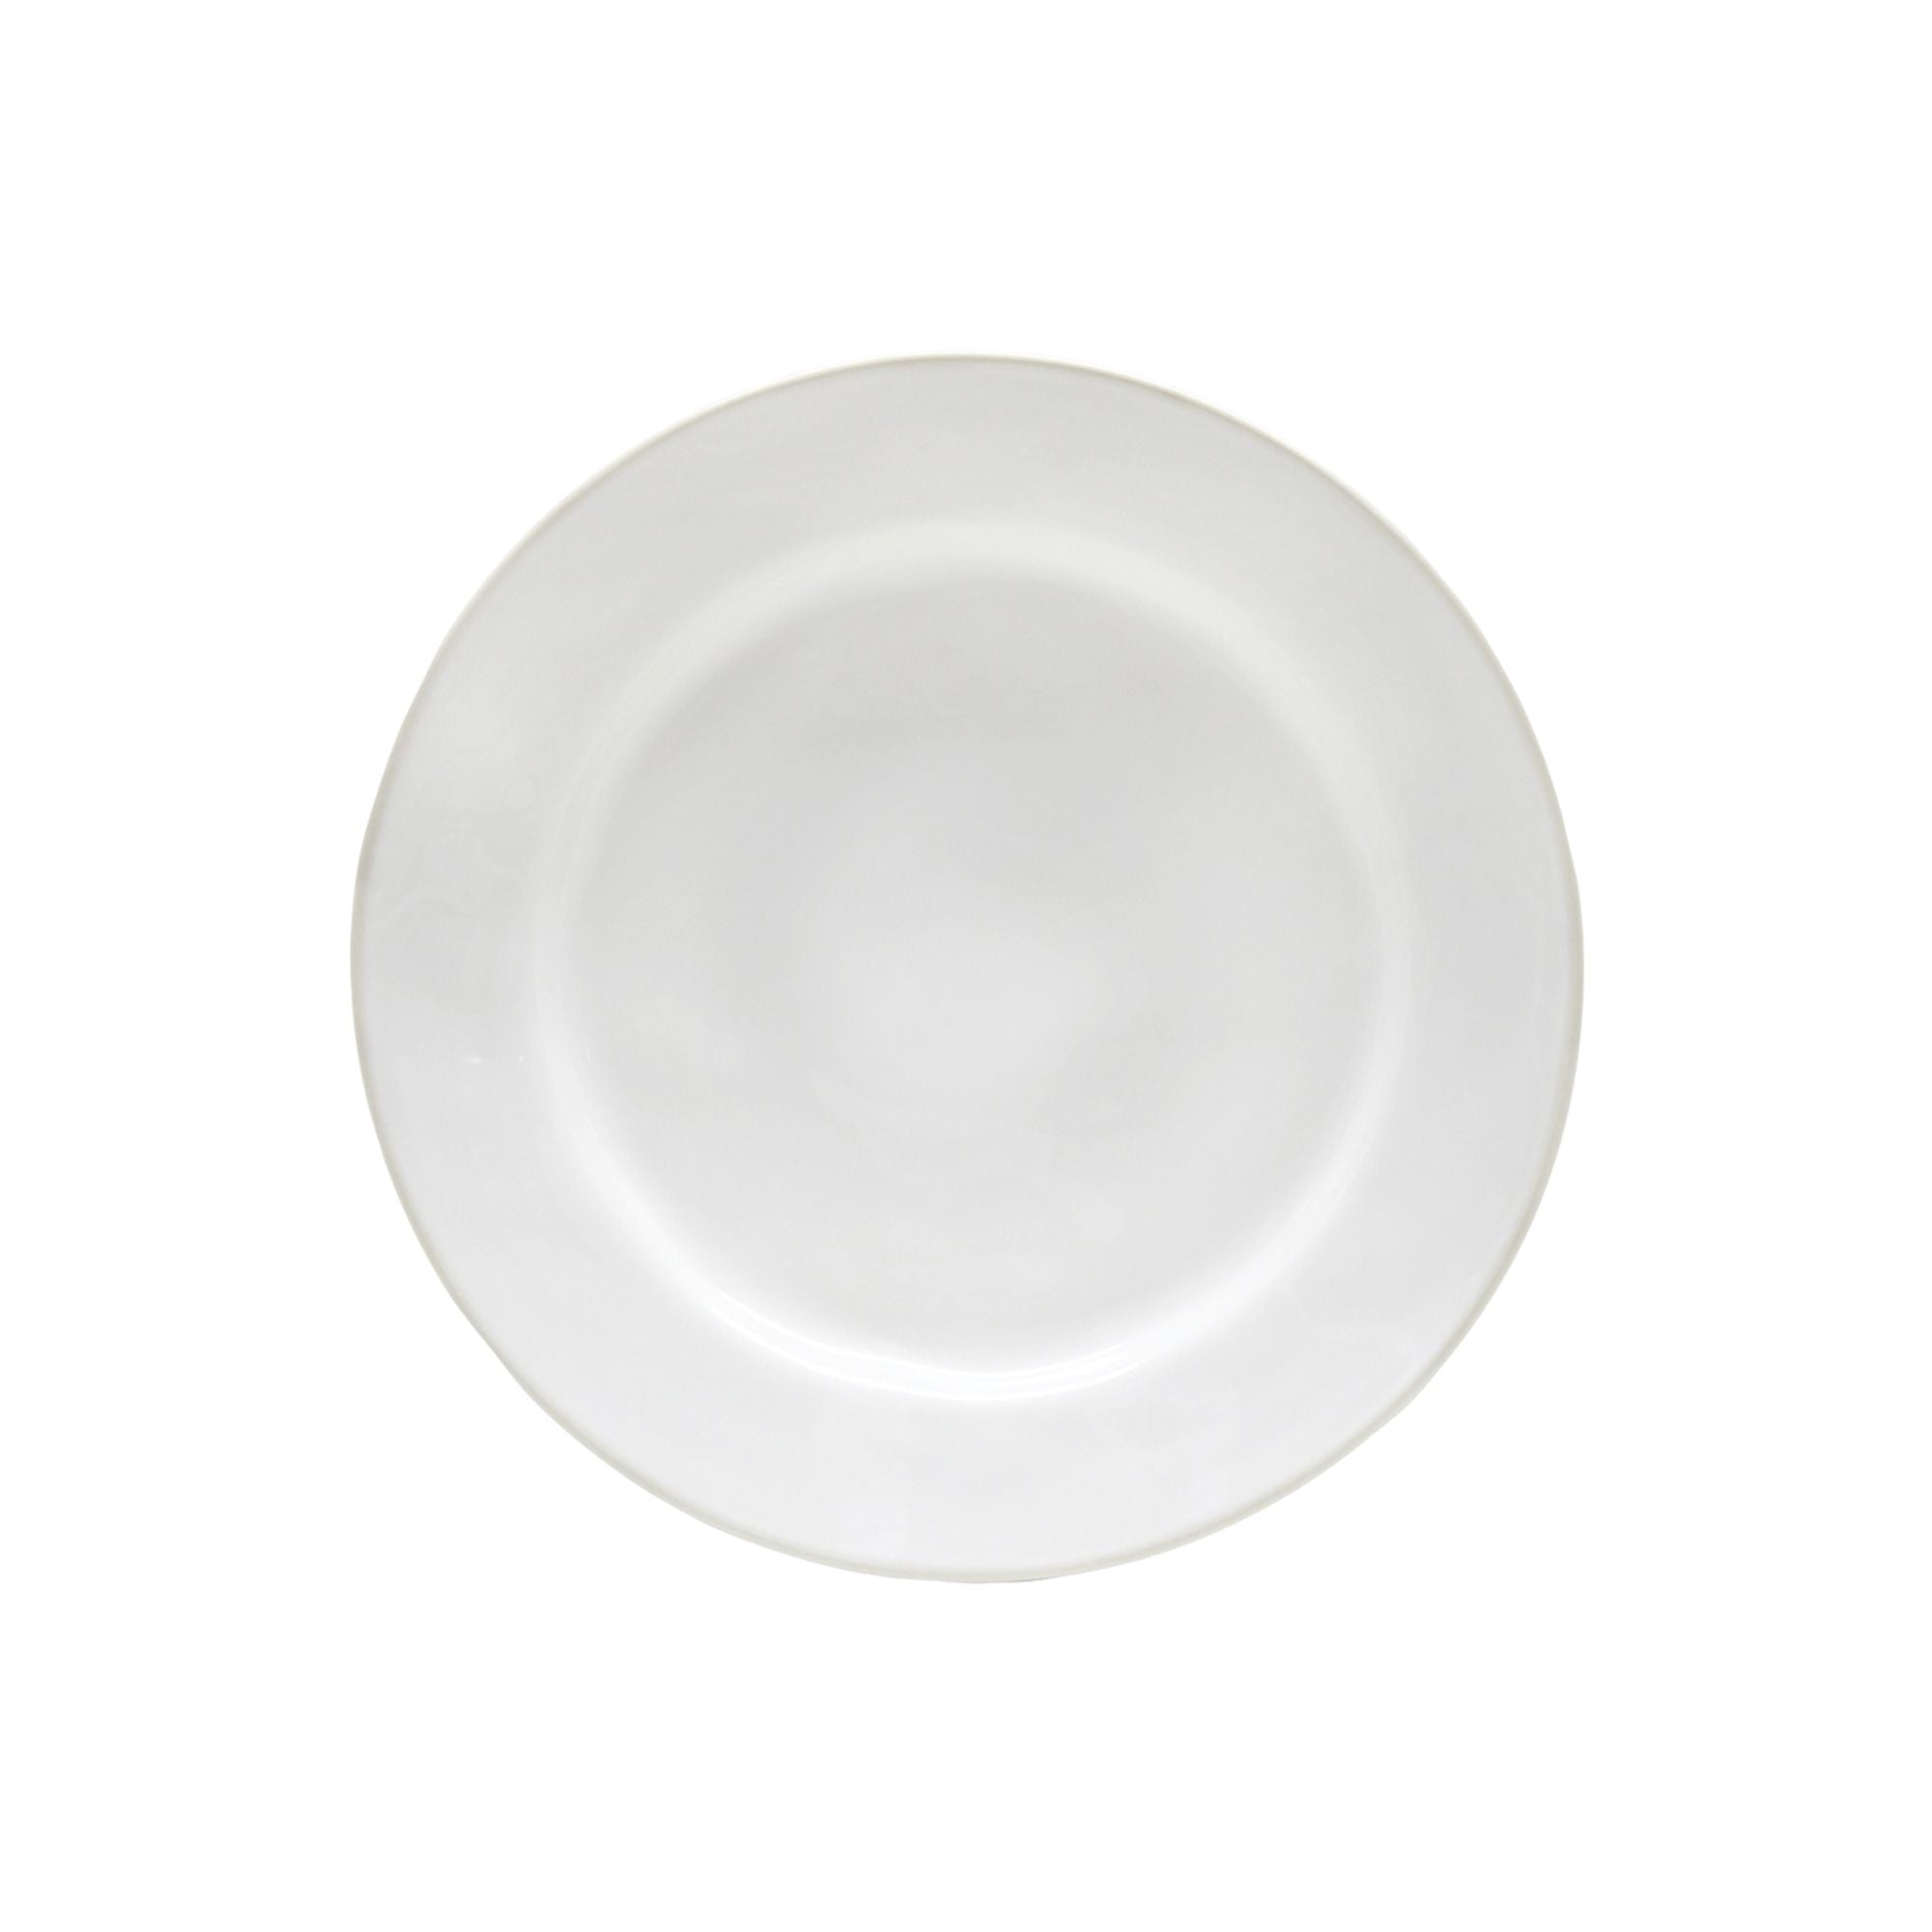 Beja Dinner Plate 11" White-Cream